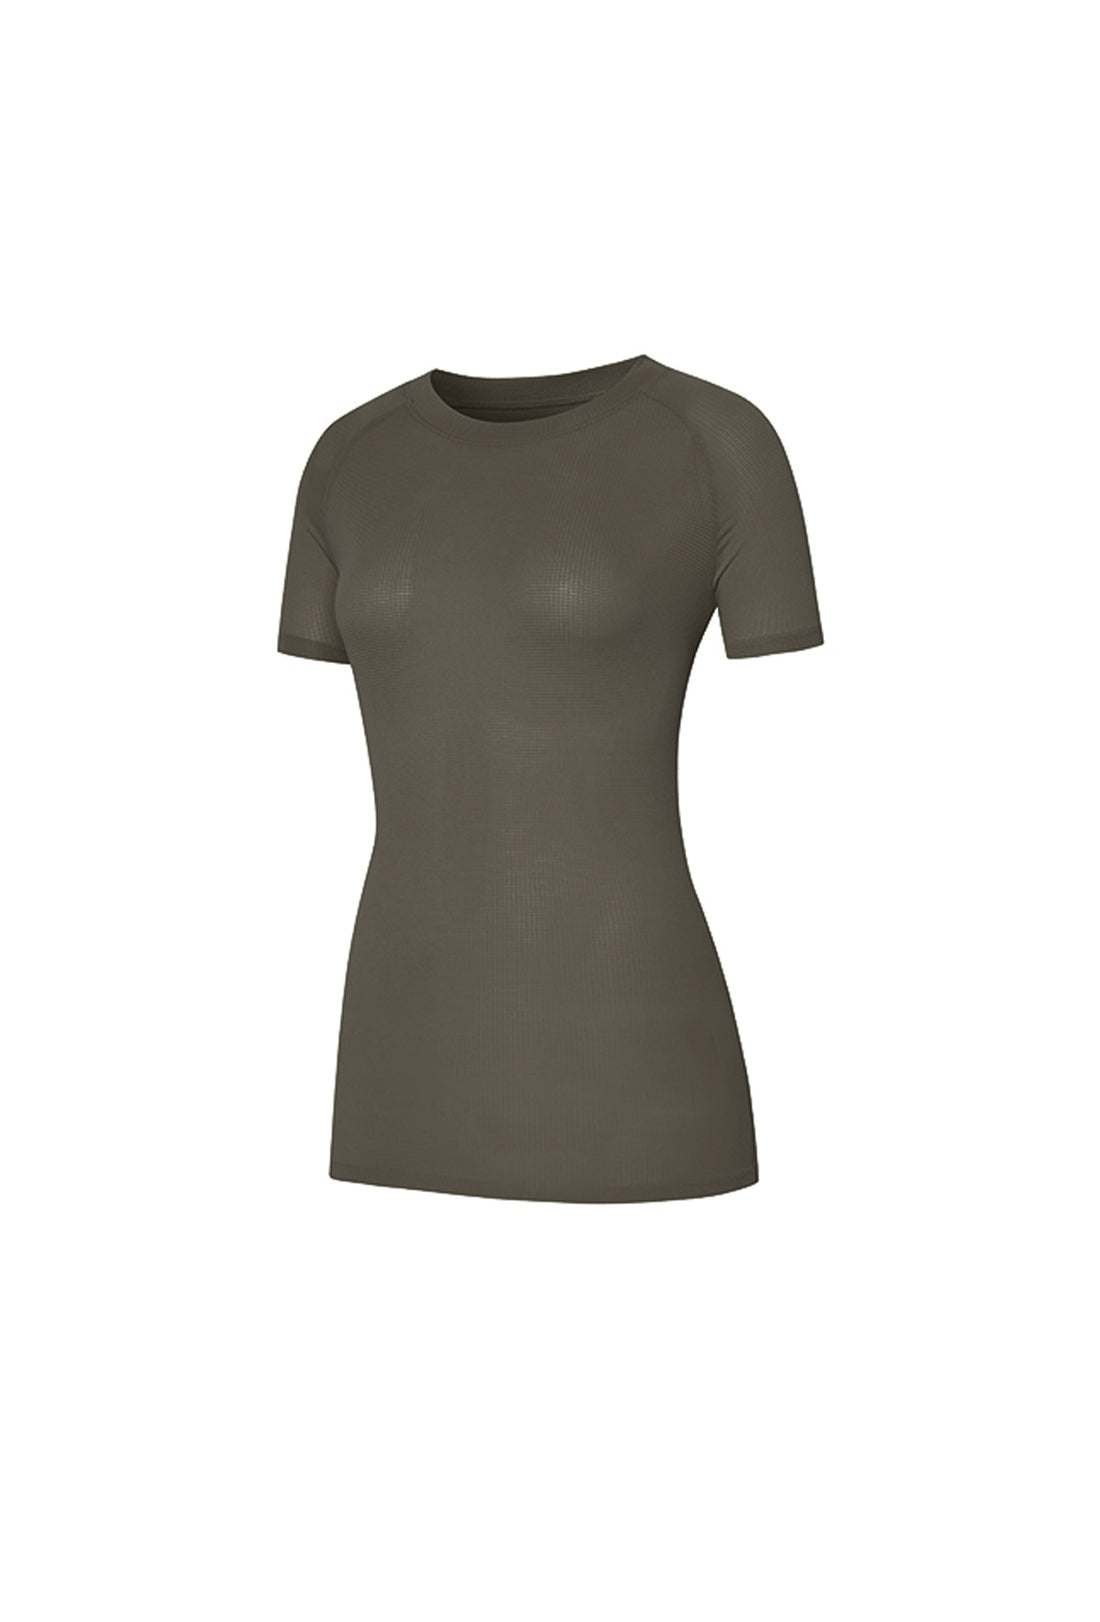 Air Scent T Shirt - Brown Khaki